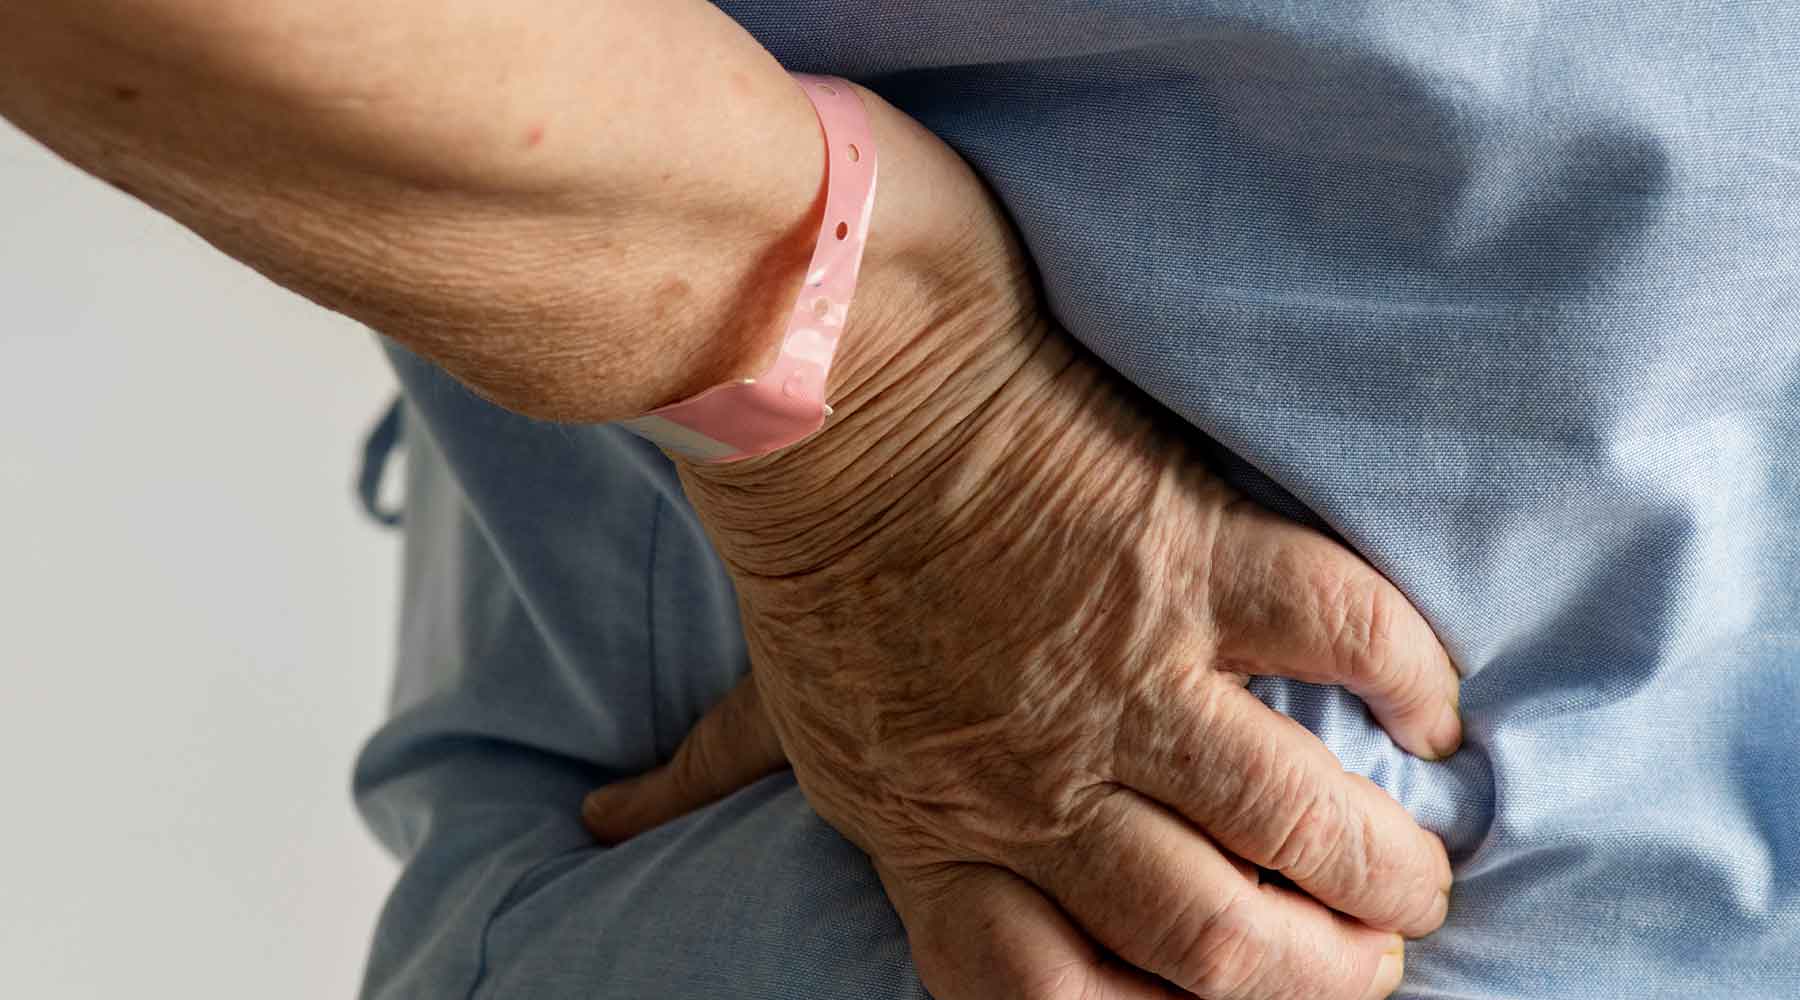 Las fracturas de cadera se asocian con notables tasas de mortalidad en pacientes de edad avanzada.